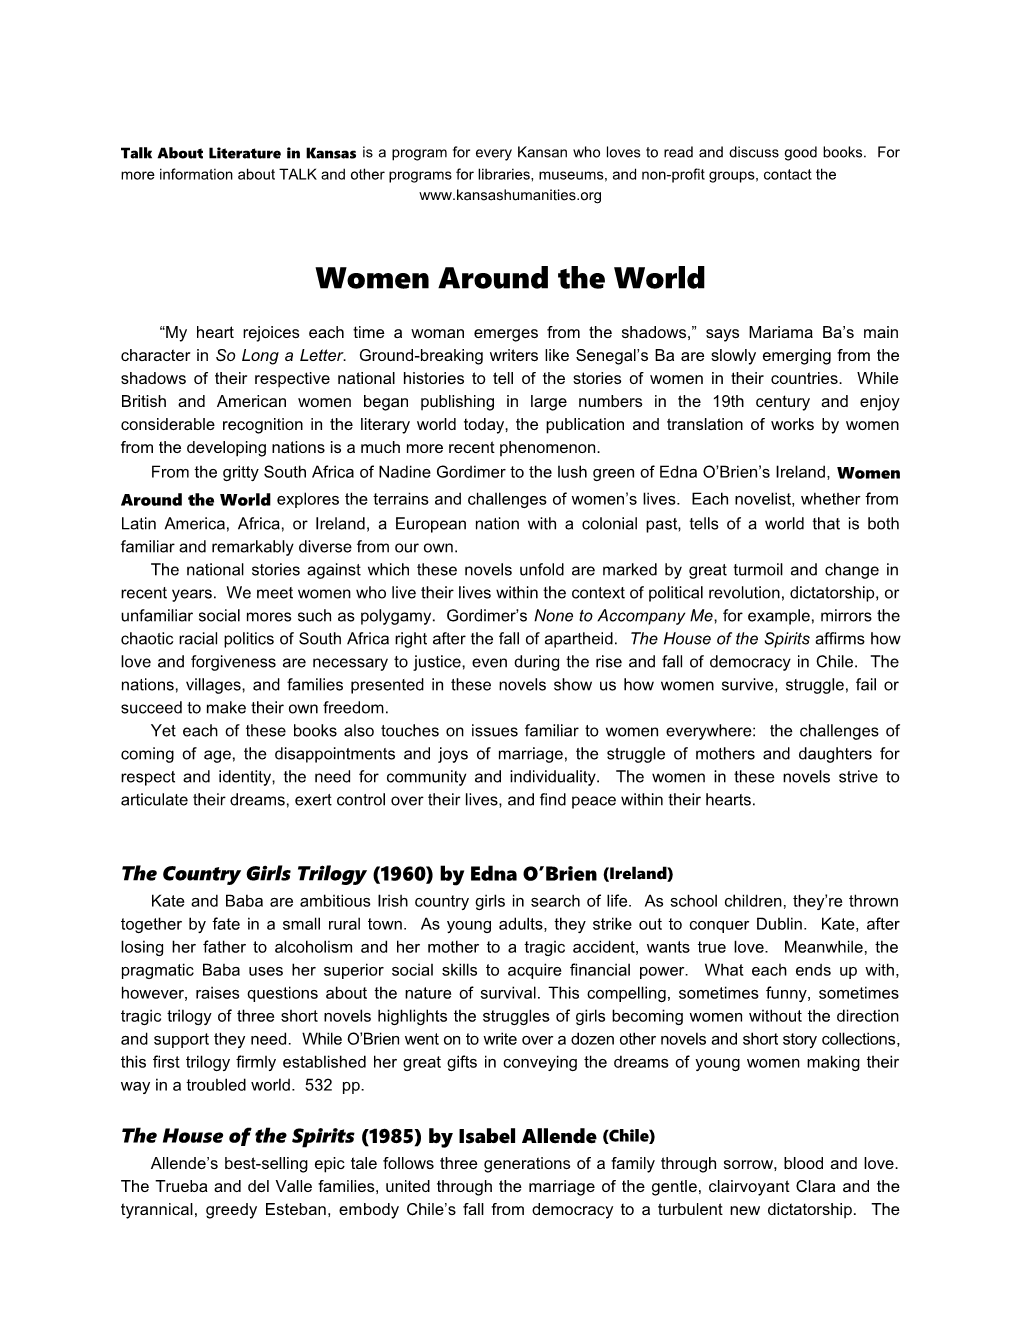 Women Around the World